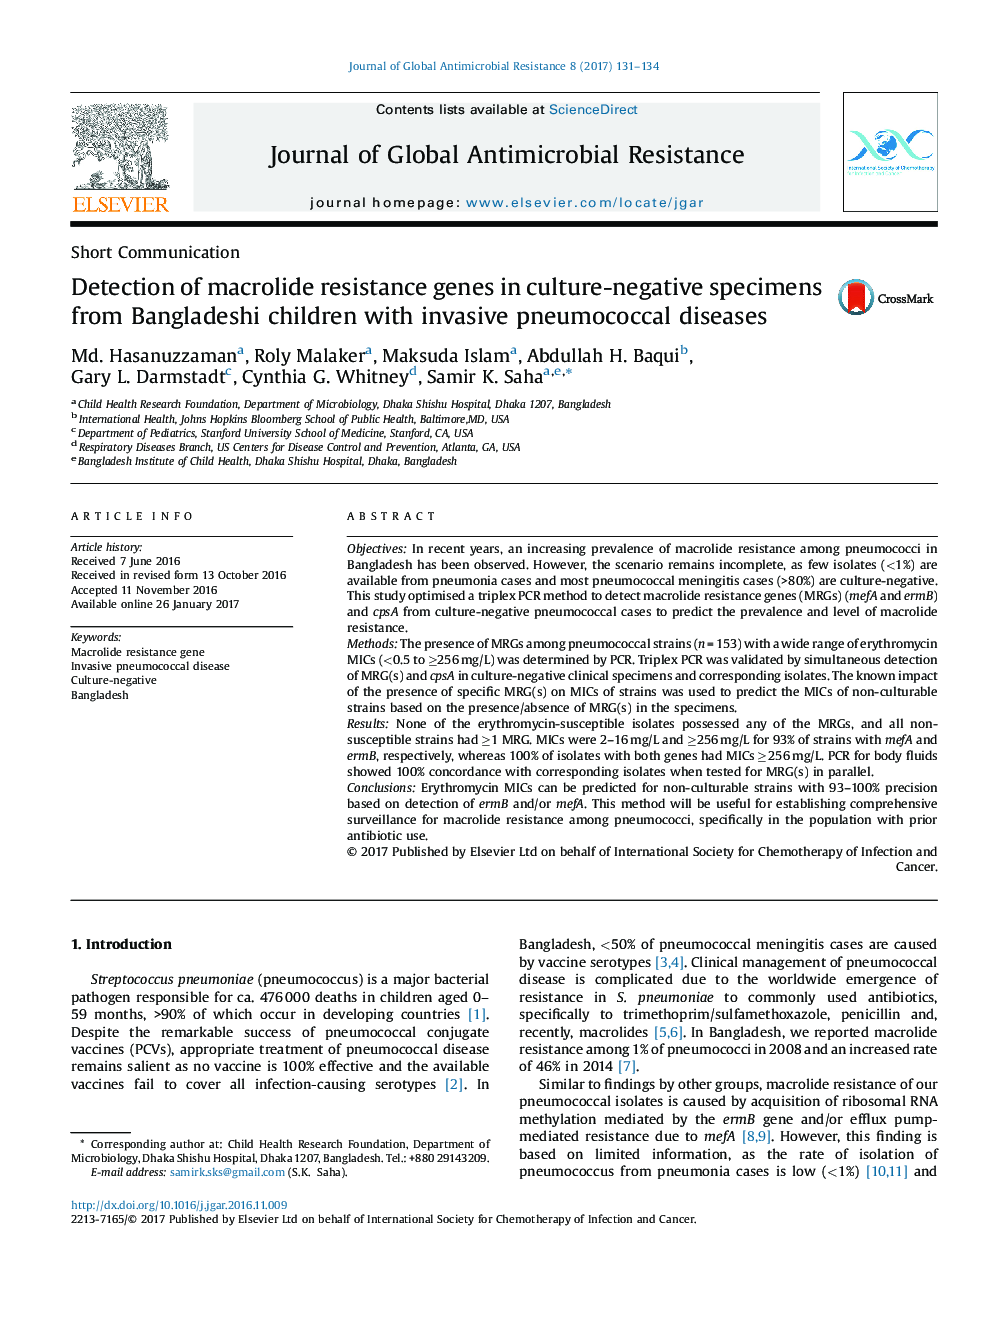 تشخیص ژن های مقاوم به ماکرولید در نمونه های منفی کشت شده از کودکان بنگلادشی با بیماری های پنوموکوک مهاجم 